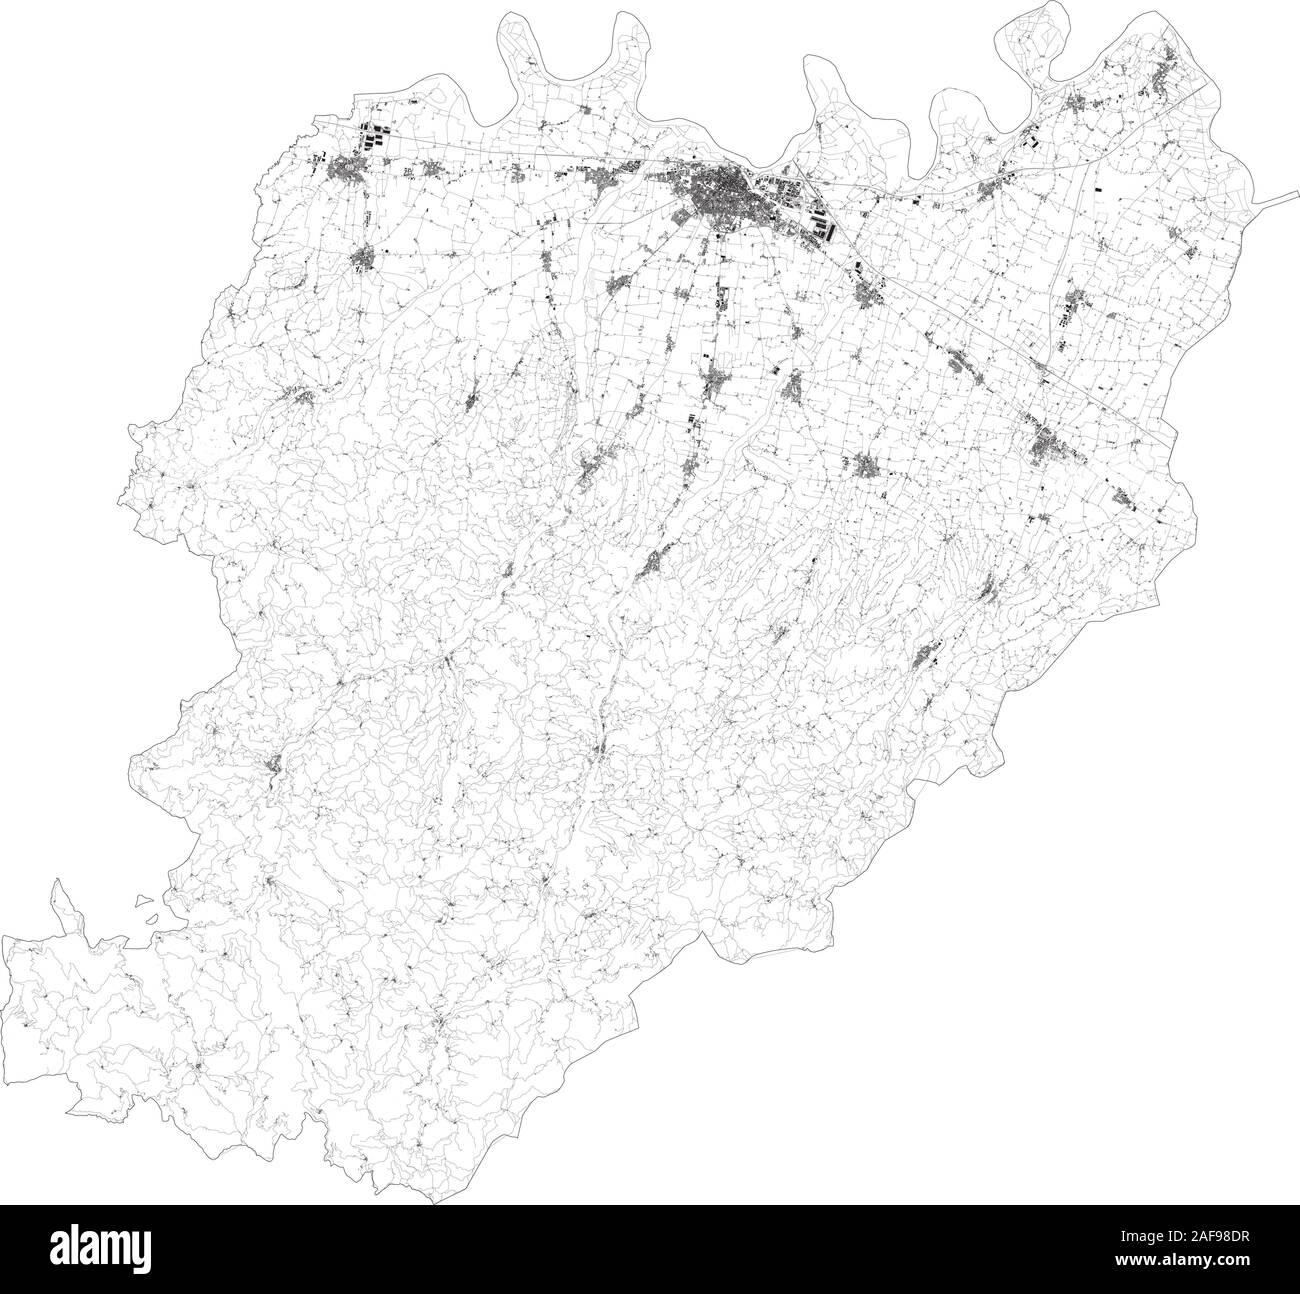 Sat-Karte der Provinz von Piacenza Städte und Straßen, Gebäude und Straßen der Umgebung. Region Emilia-Romagna, Italien. Karte Straßen Stock Vektor